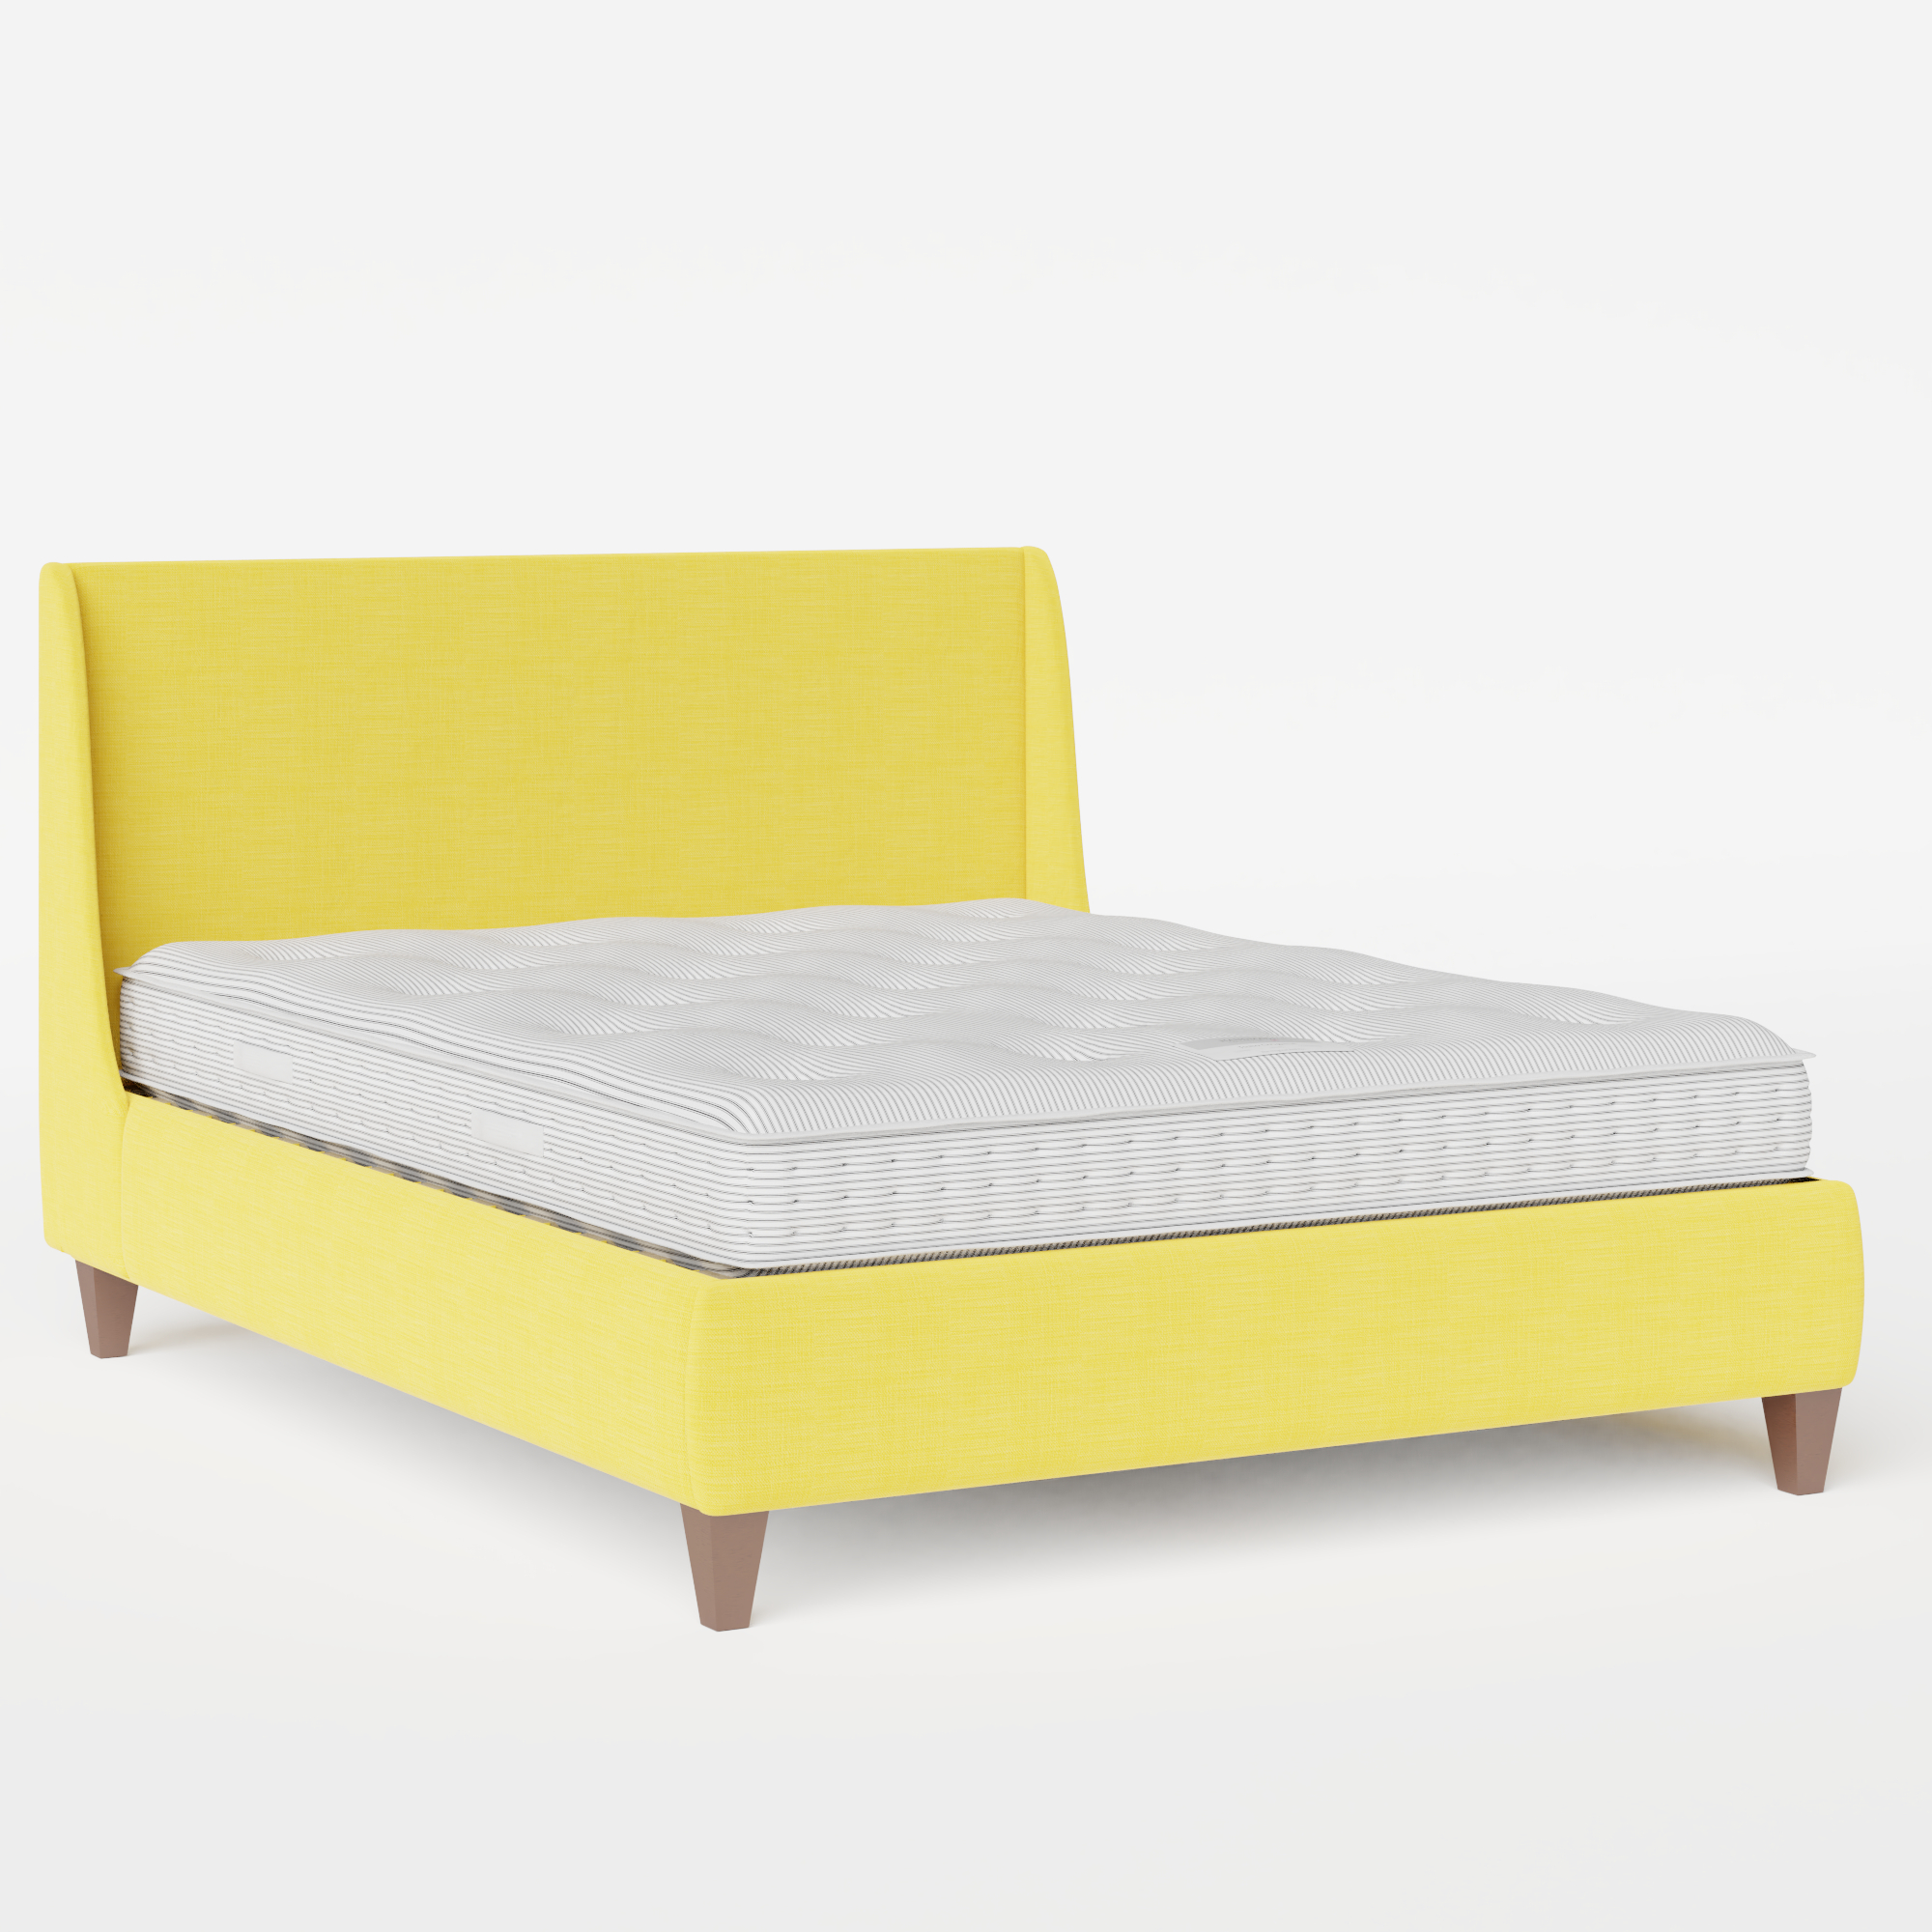 Sunderland upholstered bed in sunflower fabric